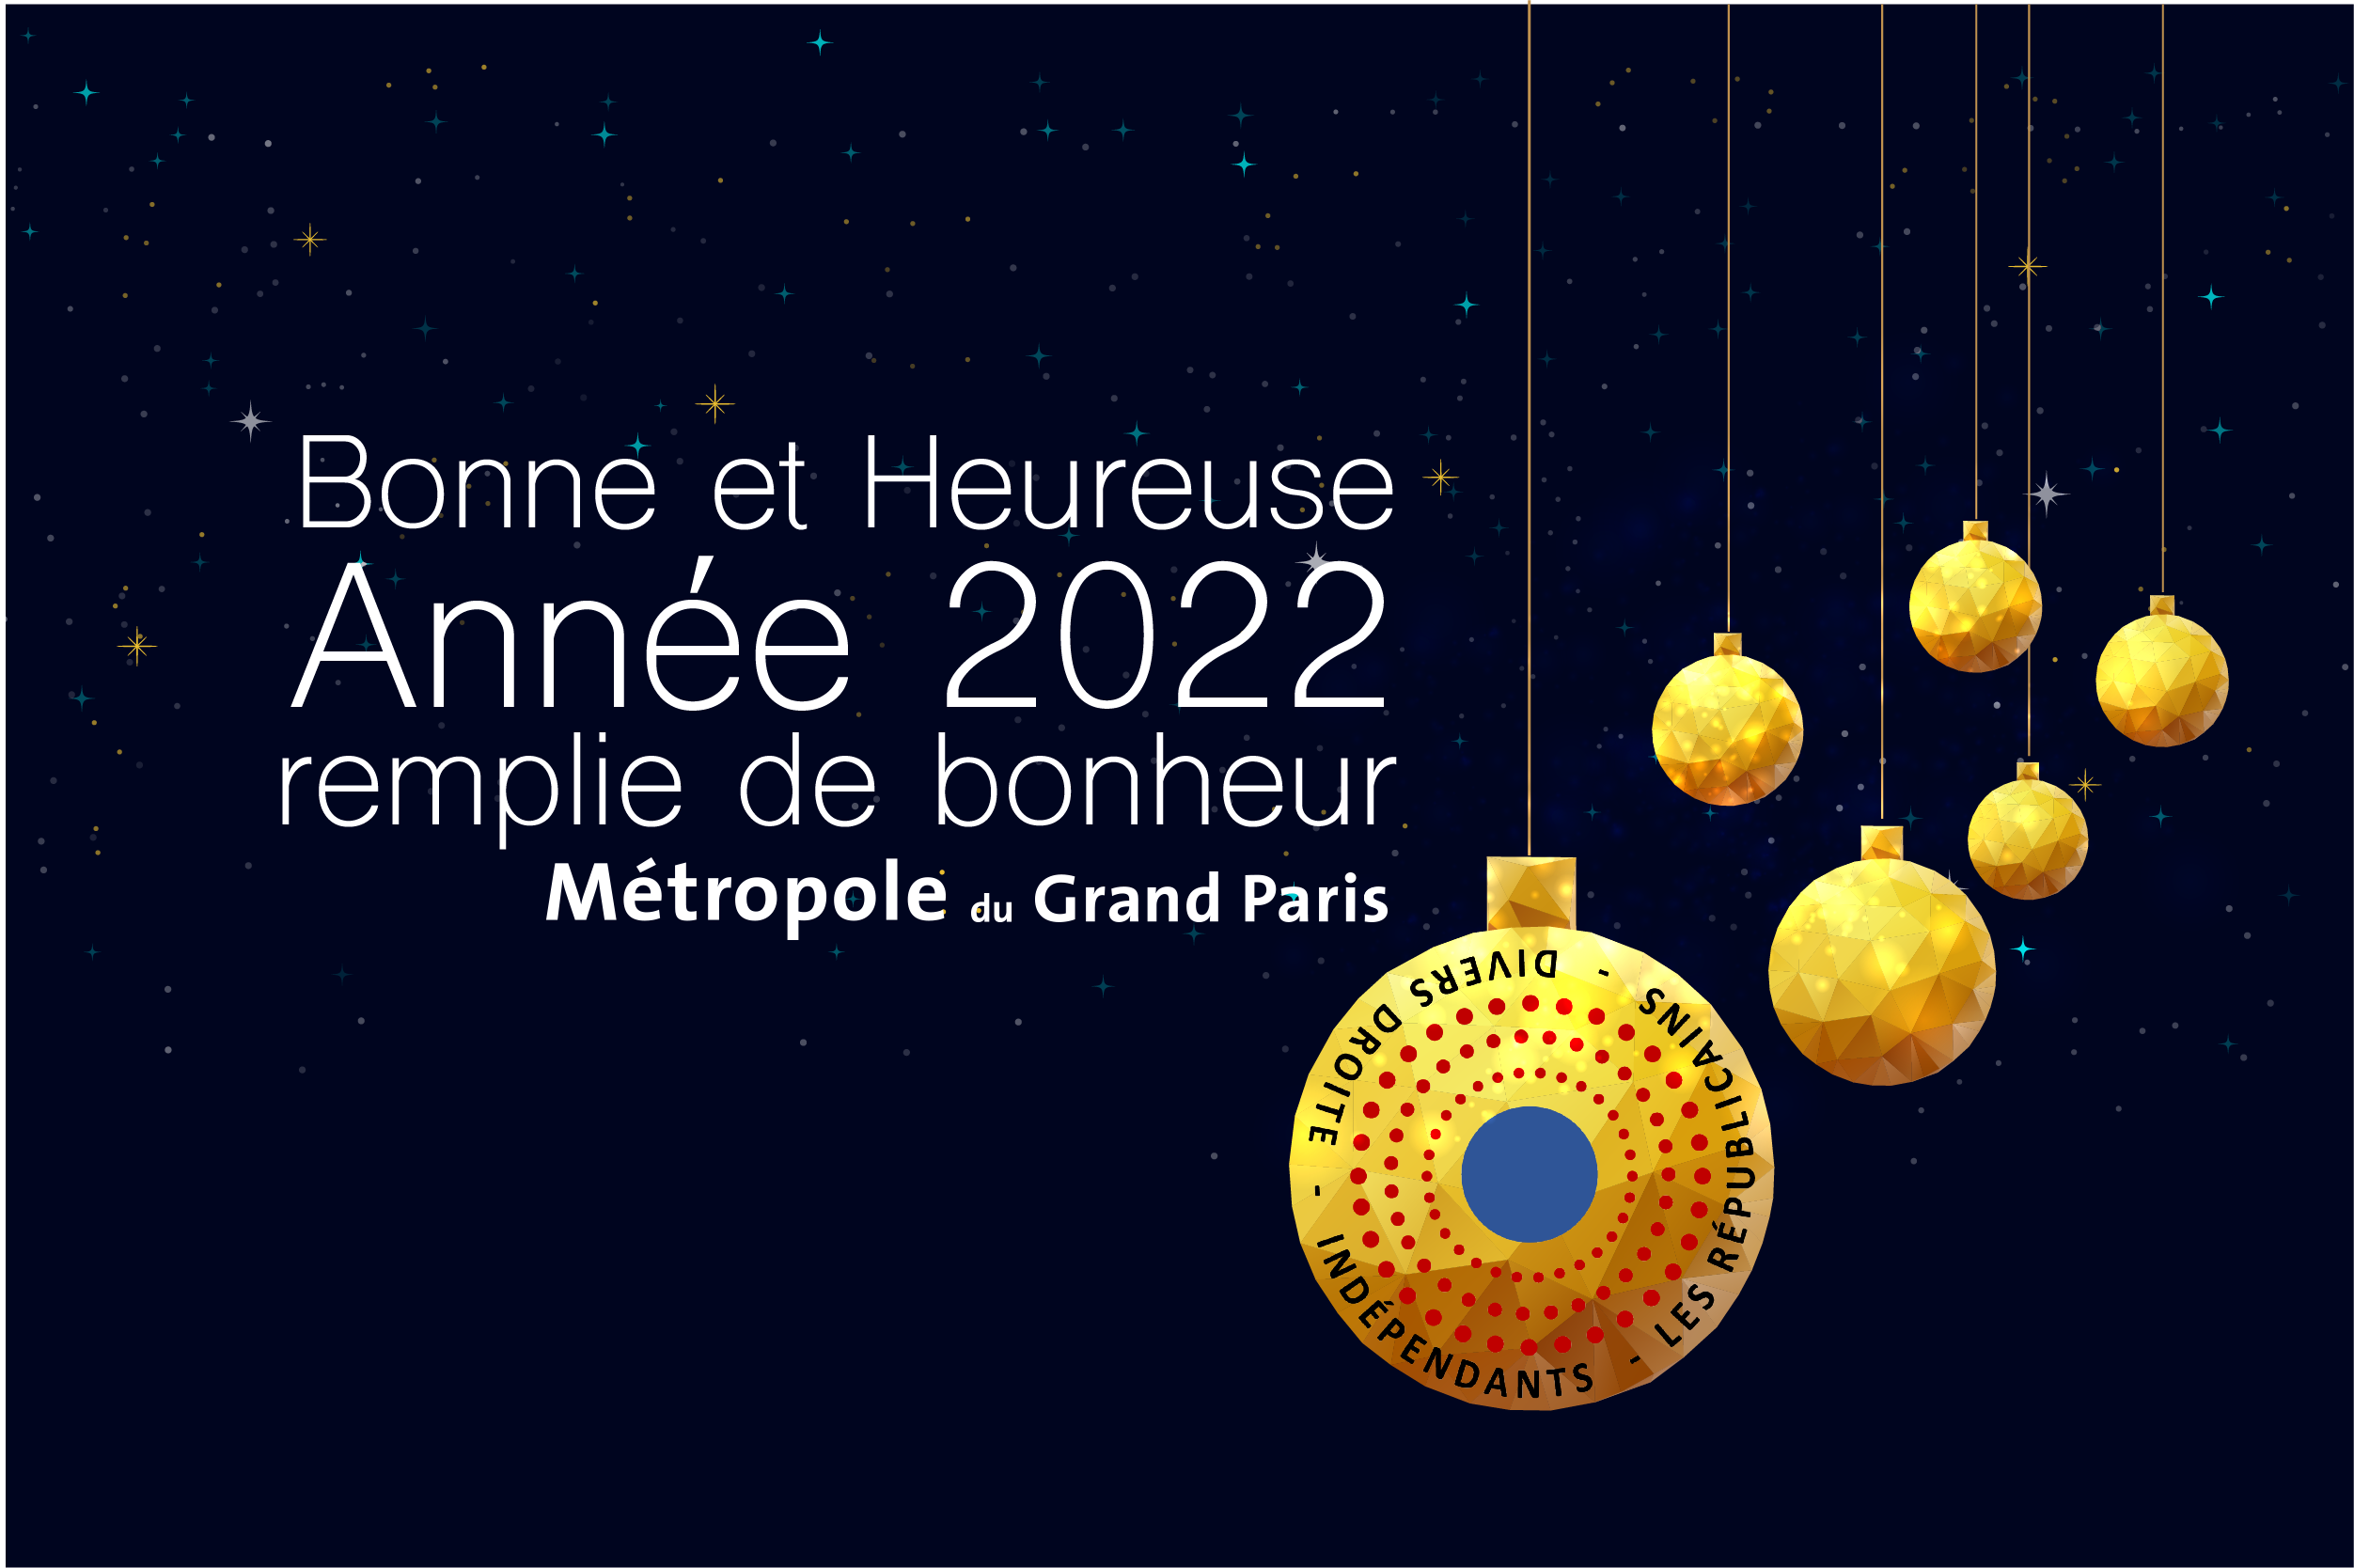 LR Métropole Grand Paris 2022